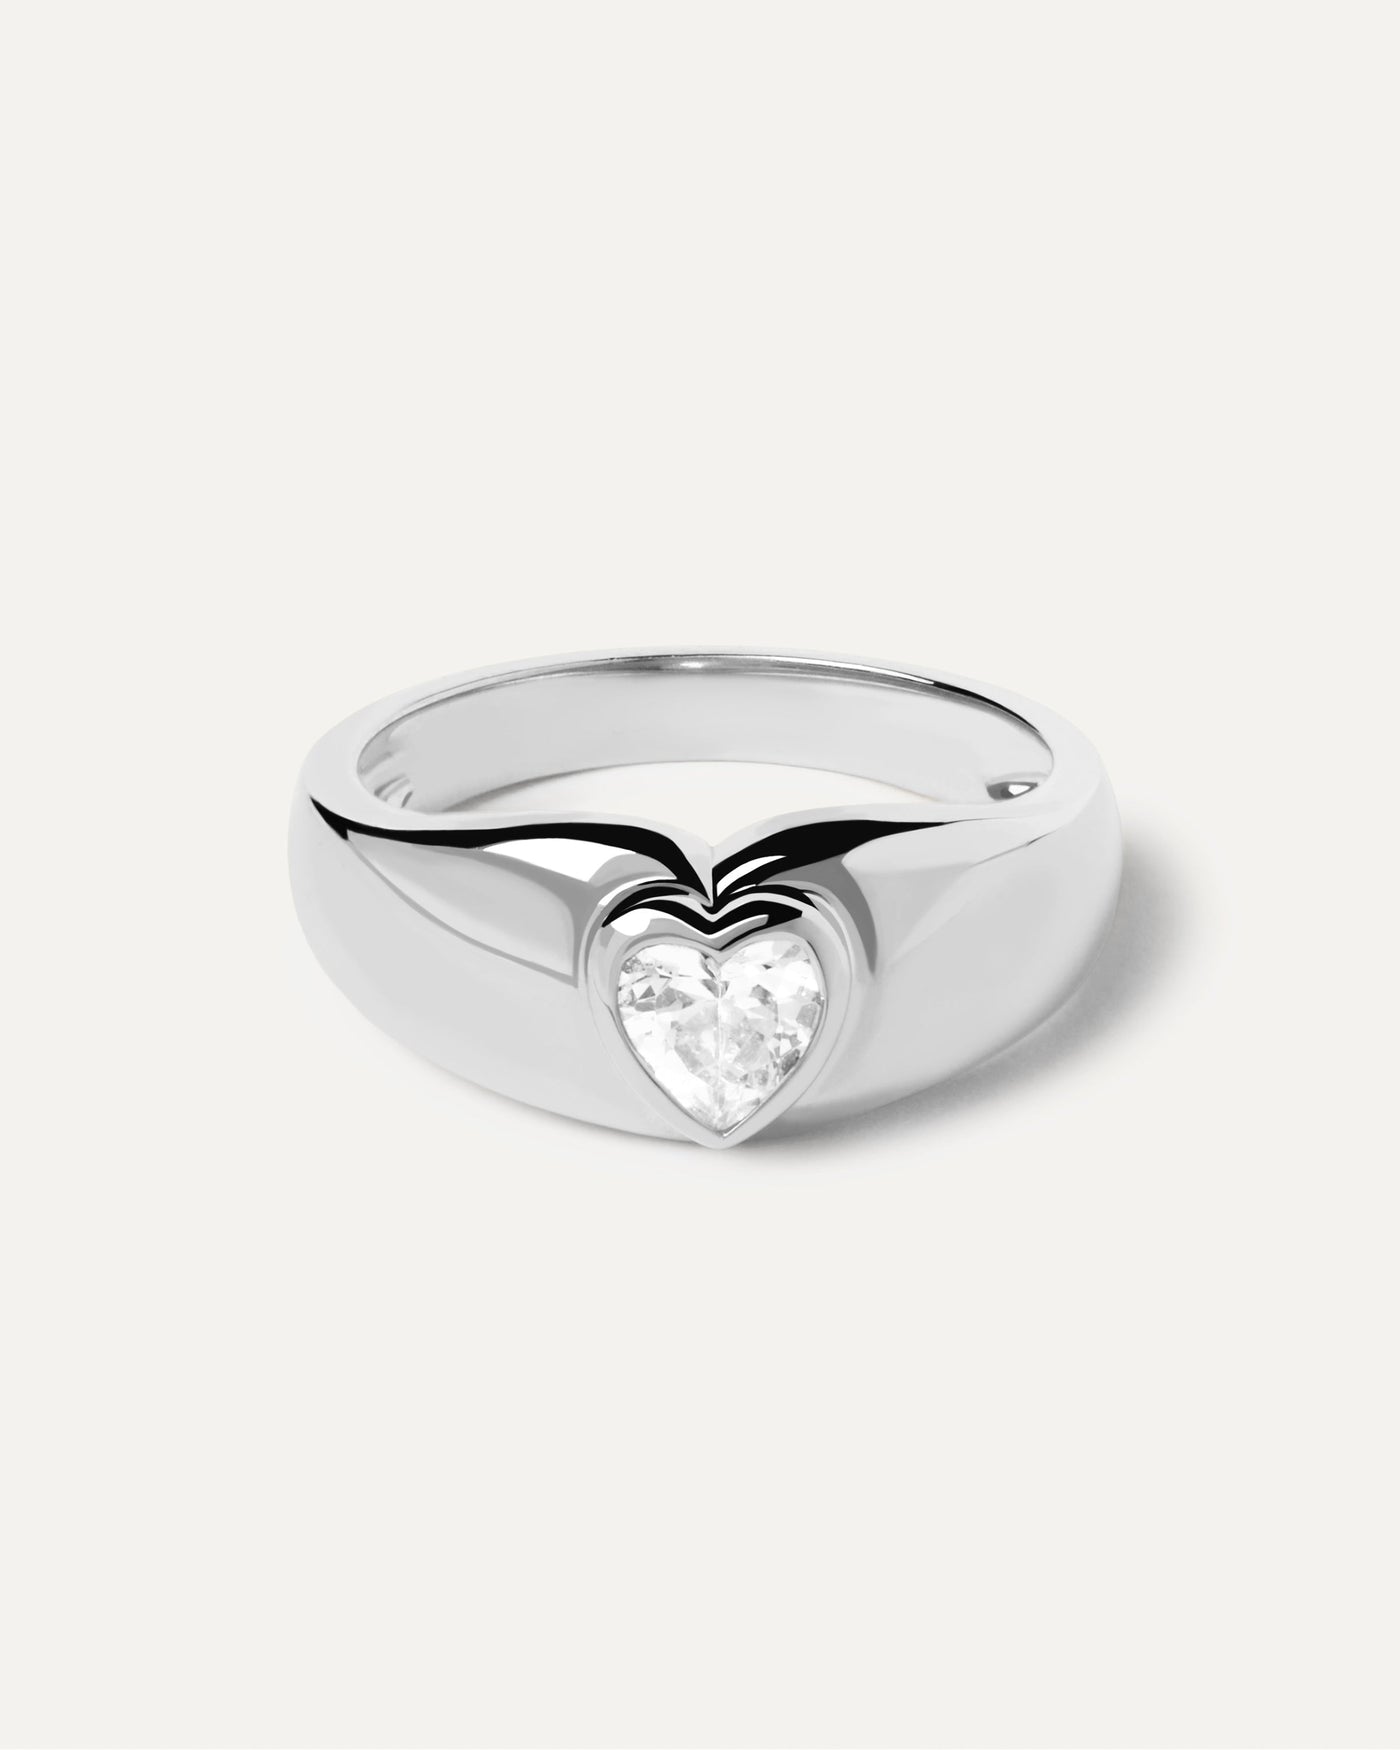 Bright Heart Silberring. Auffallender Ring aus Sterlingsilber mit herzförmigem Zirkonia. Erhalten Sie die neuesten Produkte von PDPAOLA. Geben Sie Ihre Bestellung sicher auf und erhalten Sie diesen Bestseller.